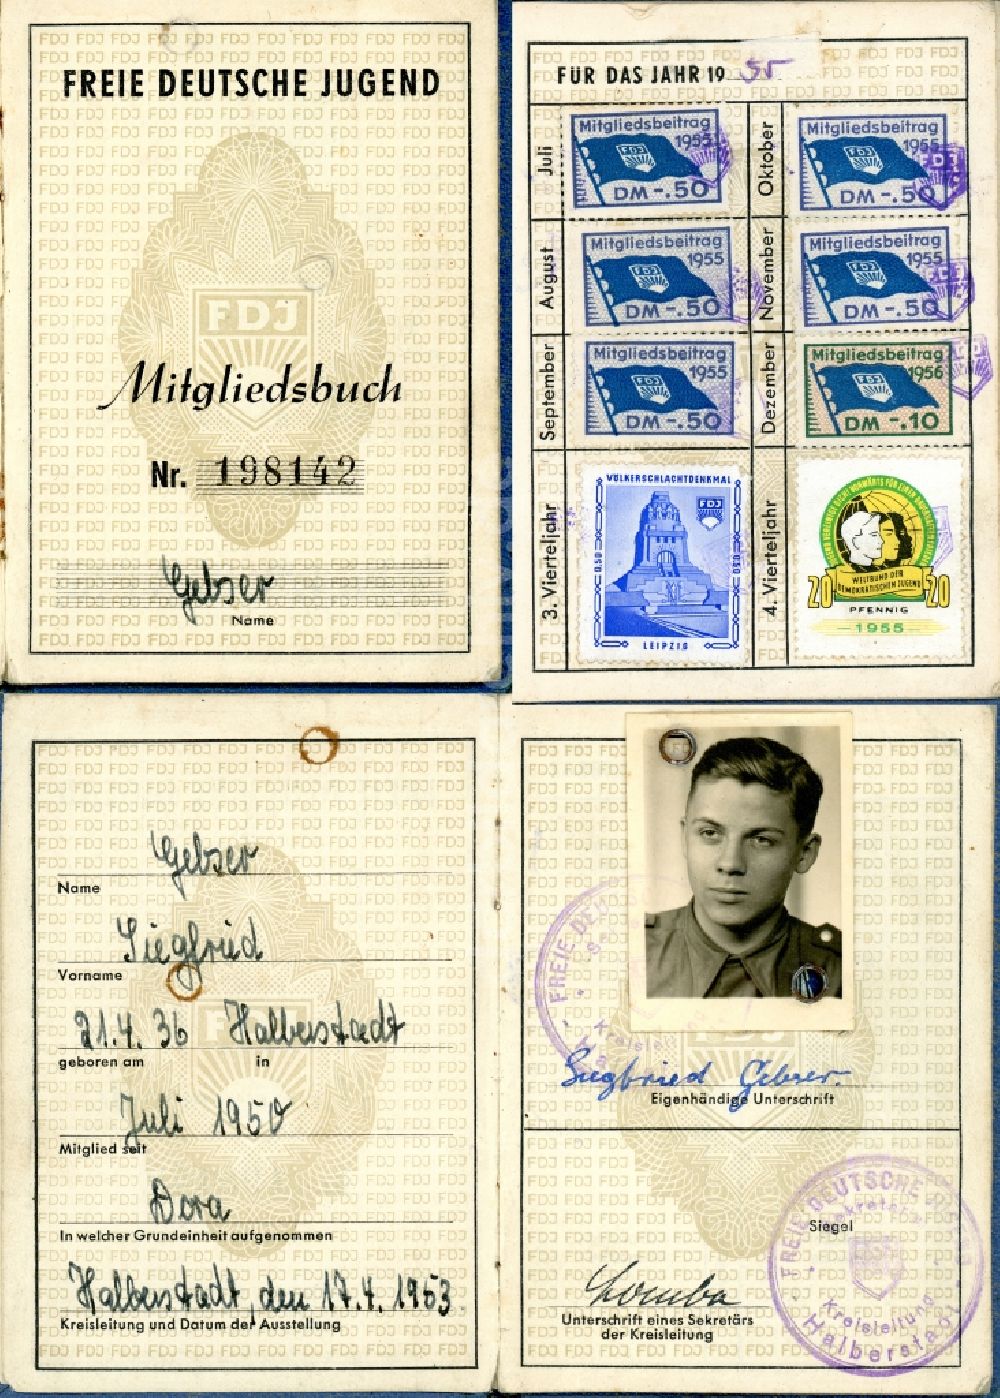 DDR-Fotoarchiv: Halberstadt - Mitgliedsbuch - Mitgliedsausweis der FDJ Freie Deutsche Jugend ausgestellt in Halberstadt in Sachsen-Anhalt in der DDR